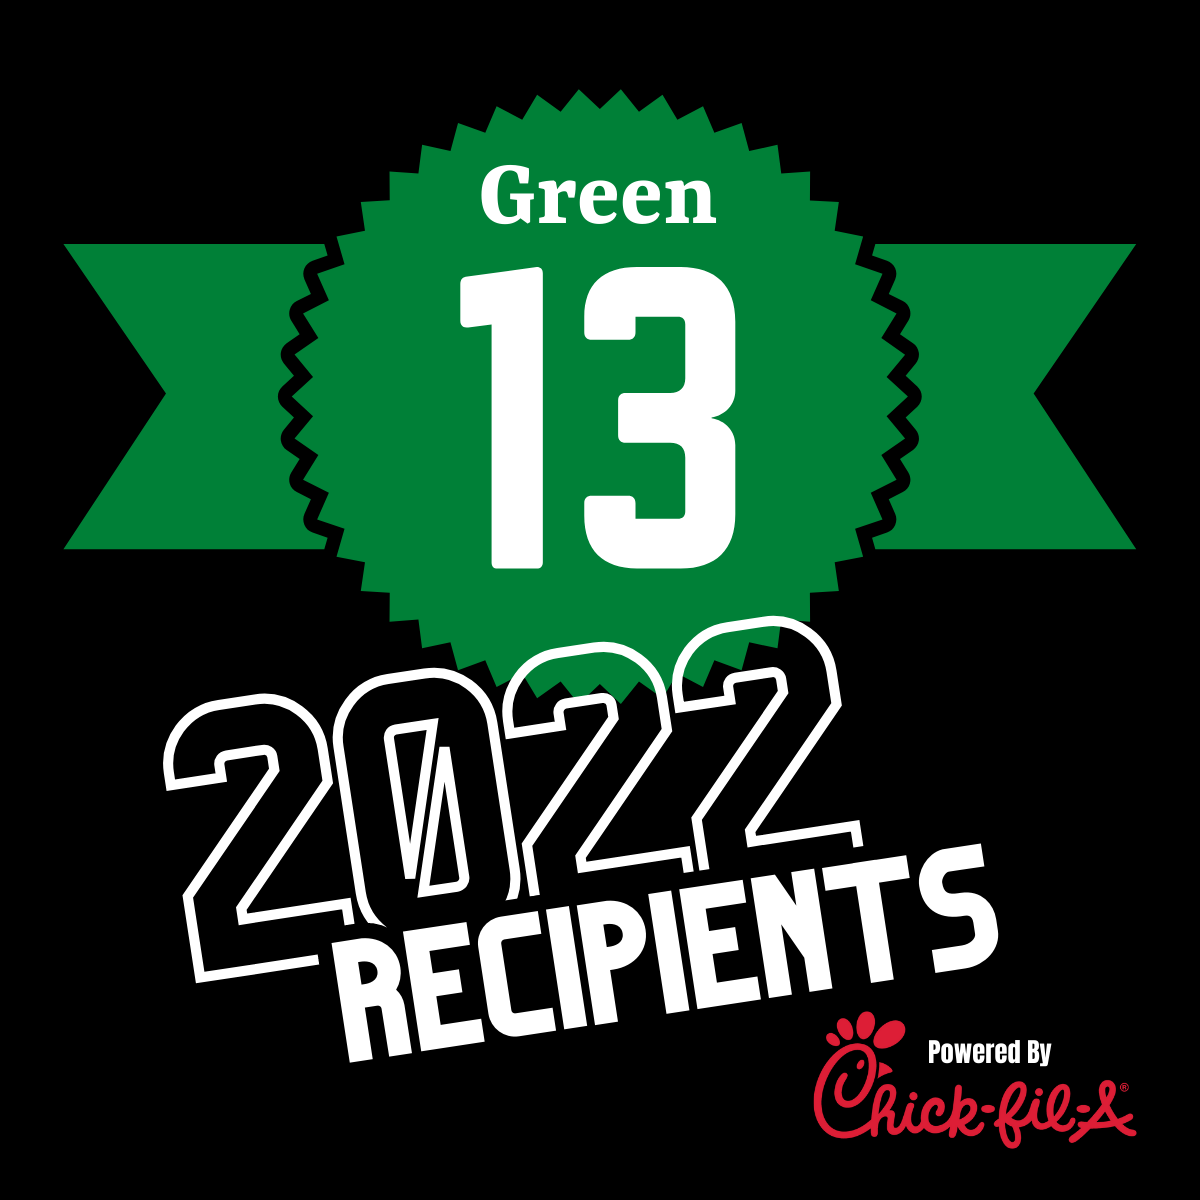 Green 13 2022 Recipients